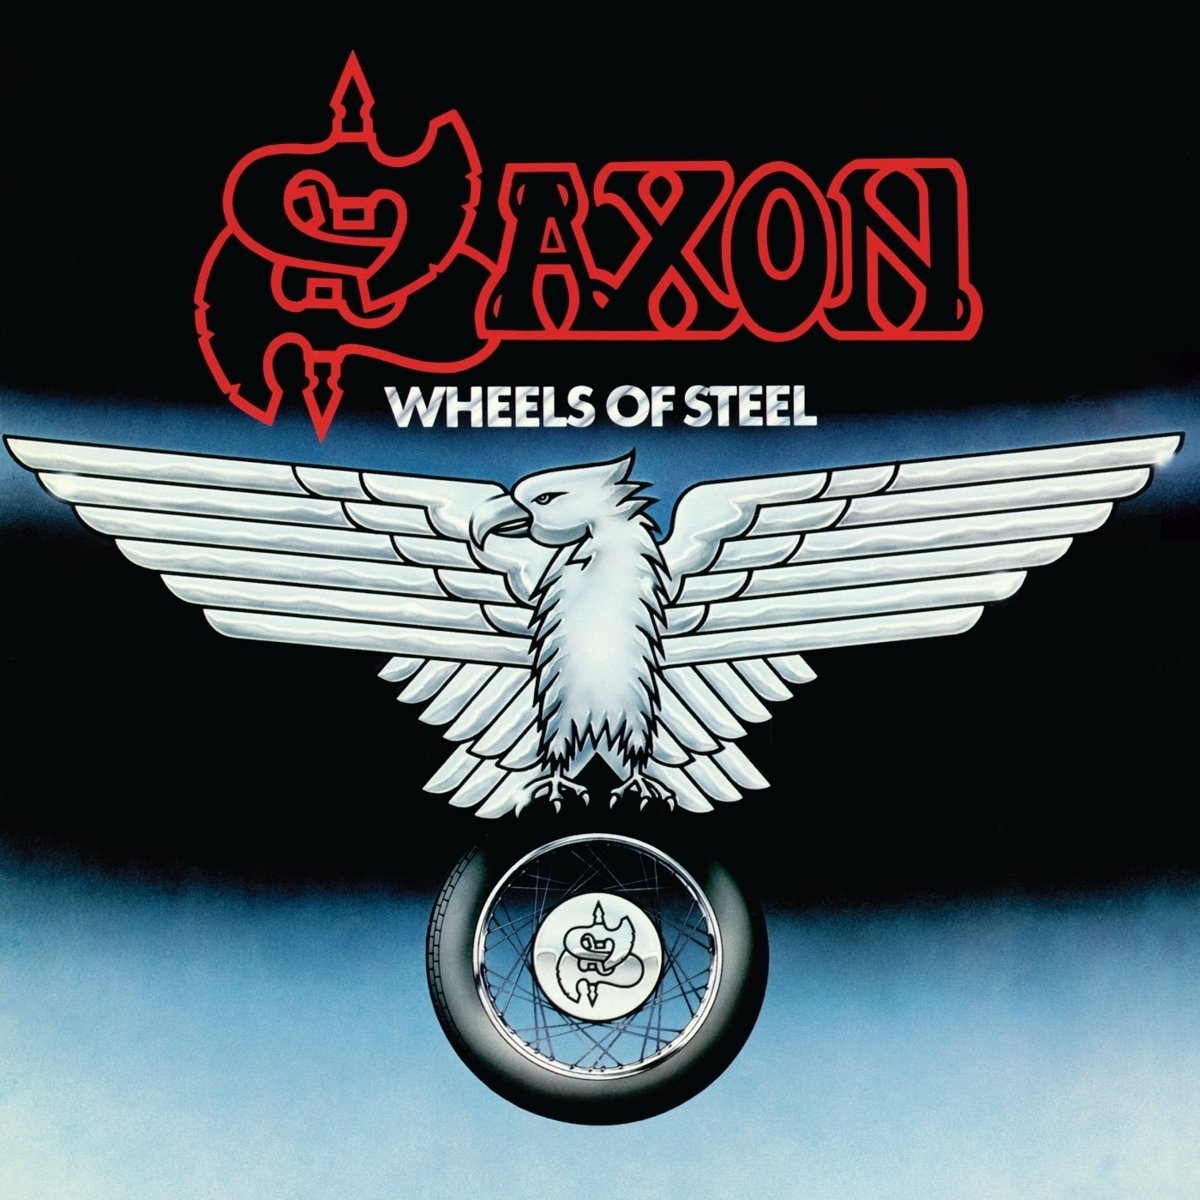 Saxon "Wheels Of Steel" Blue / White Splatter Vinyl